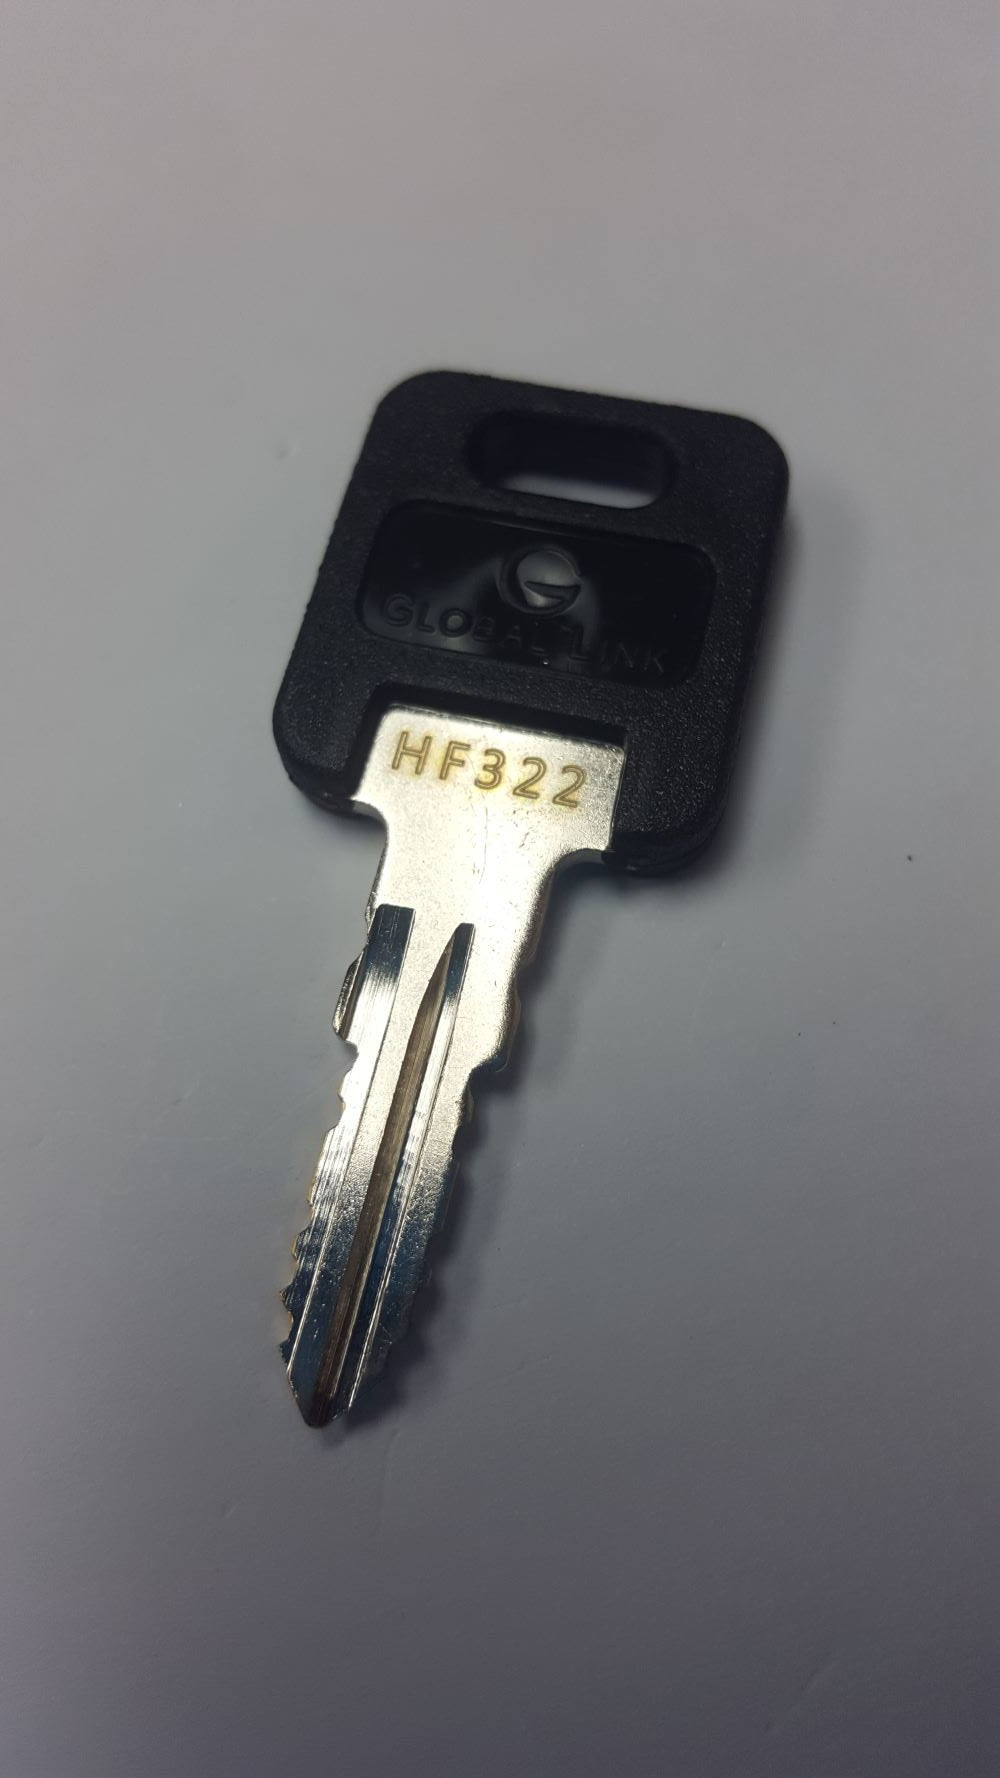 CPG KEY-HF-322 Pre-cut Stamped FIC Replacemnt HF322 Key